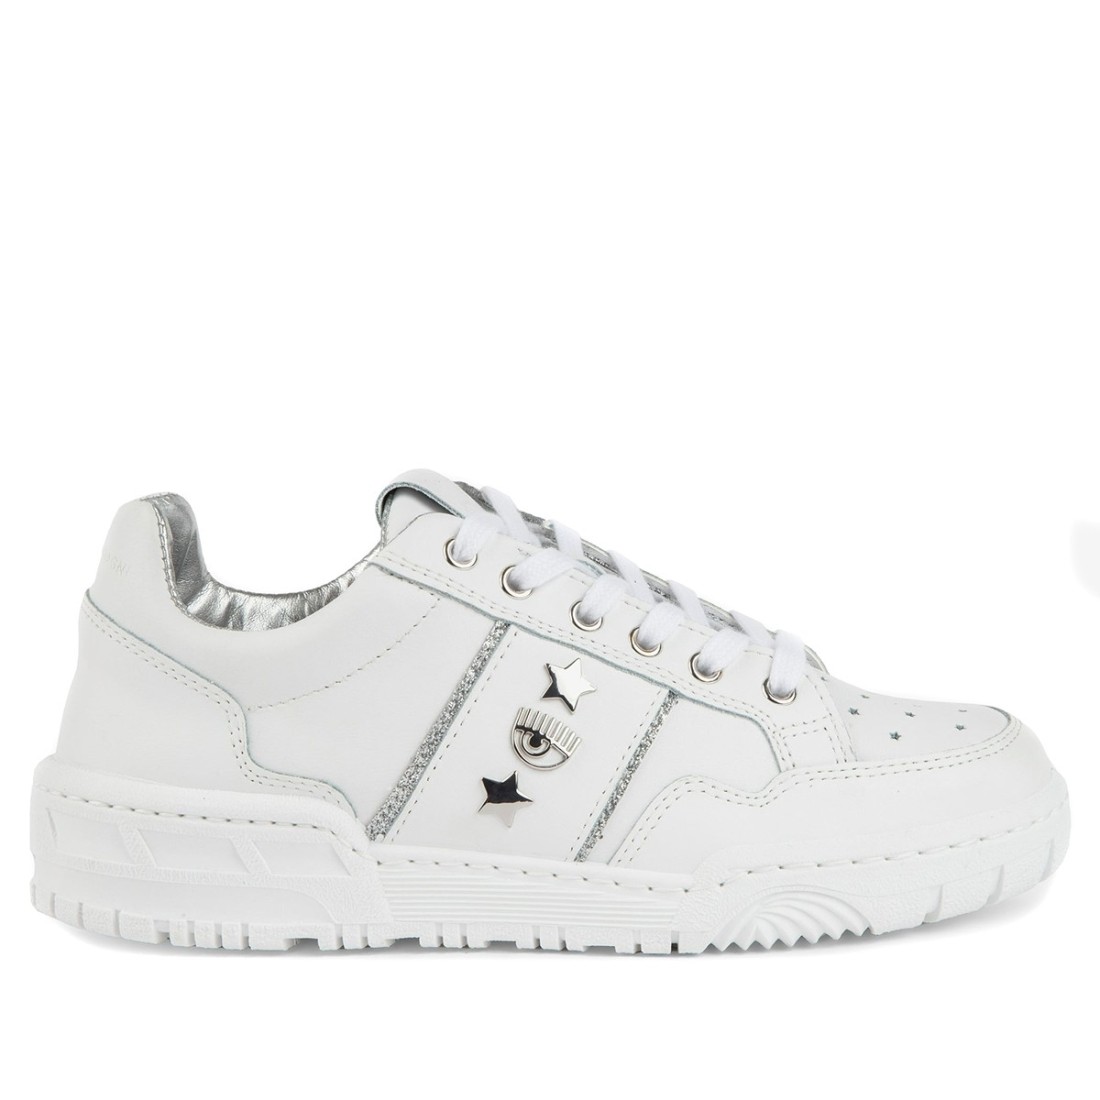 Image of CHIARA FERRAGNI - Sneakers CF-1 - Colore: Bianco,T